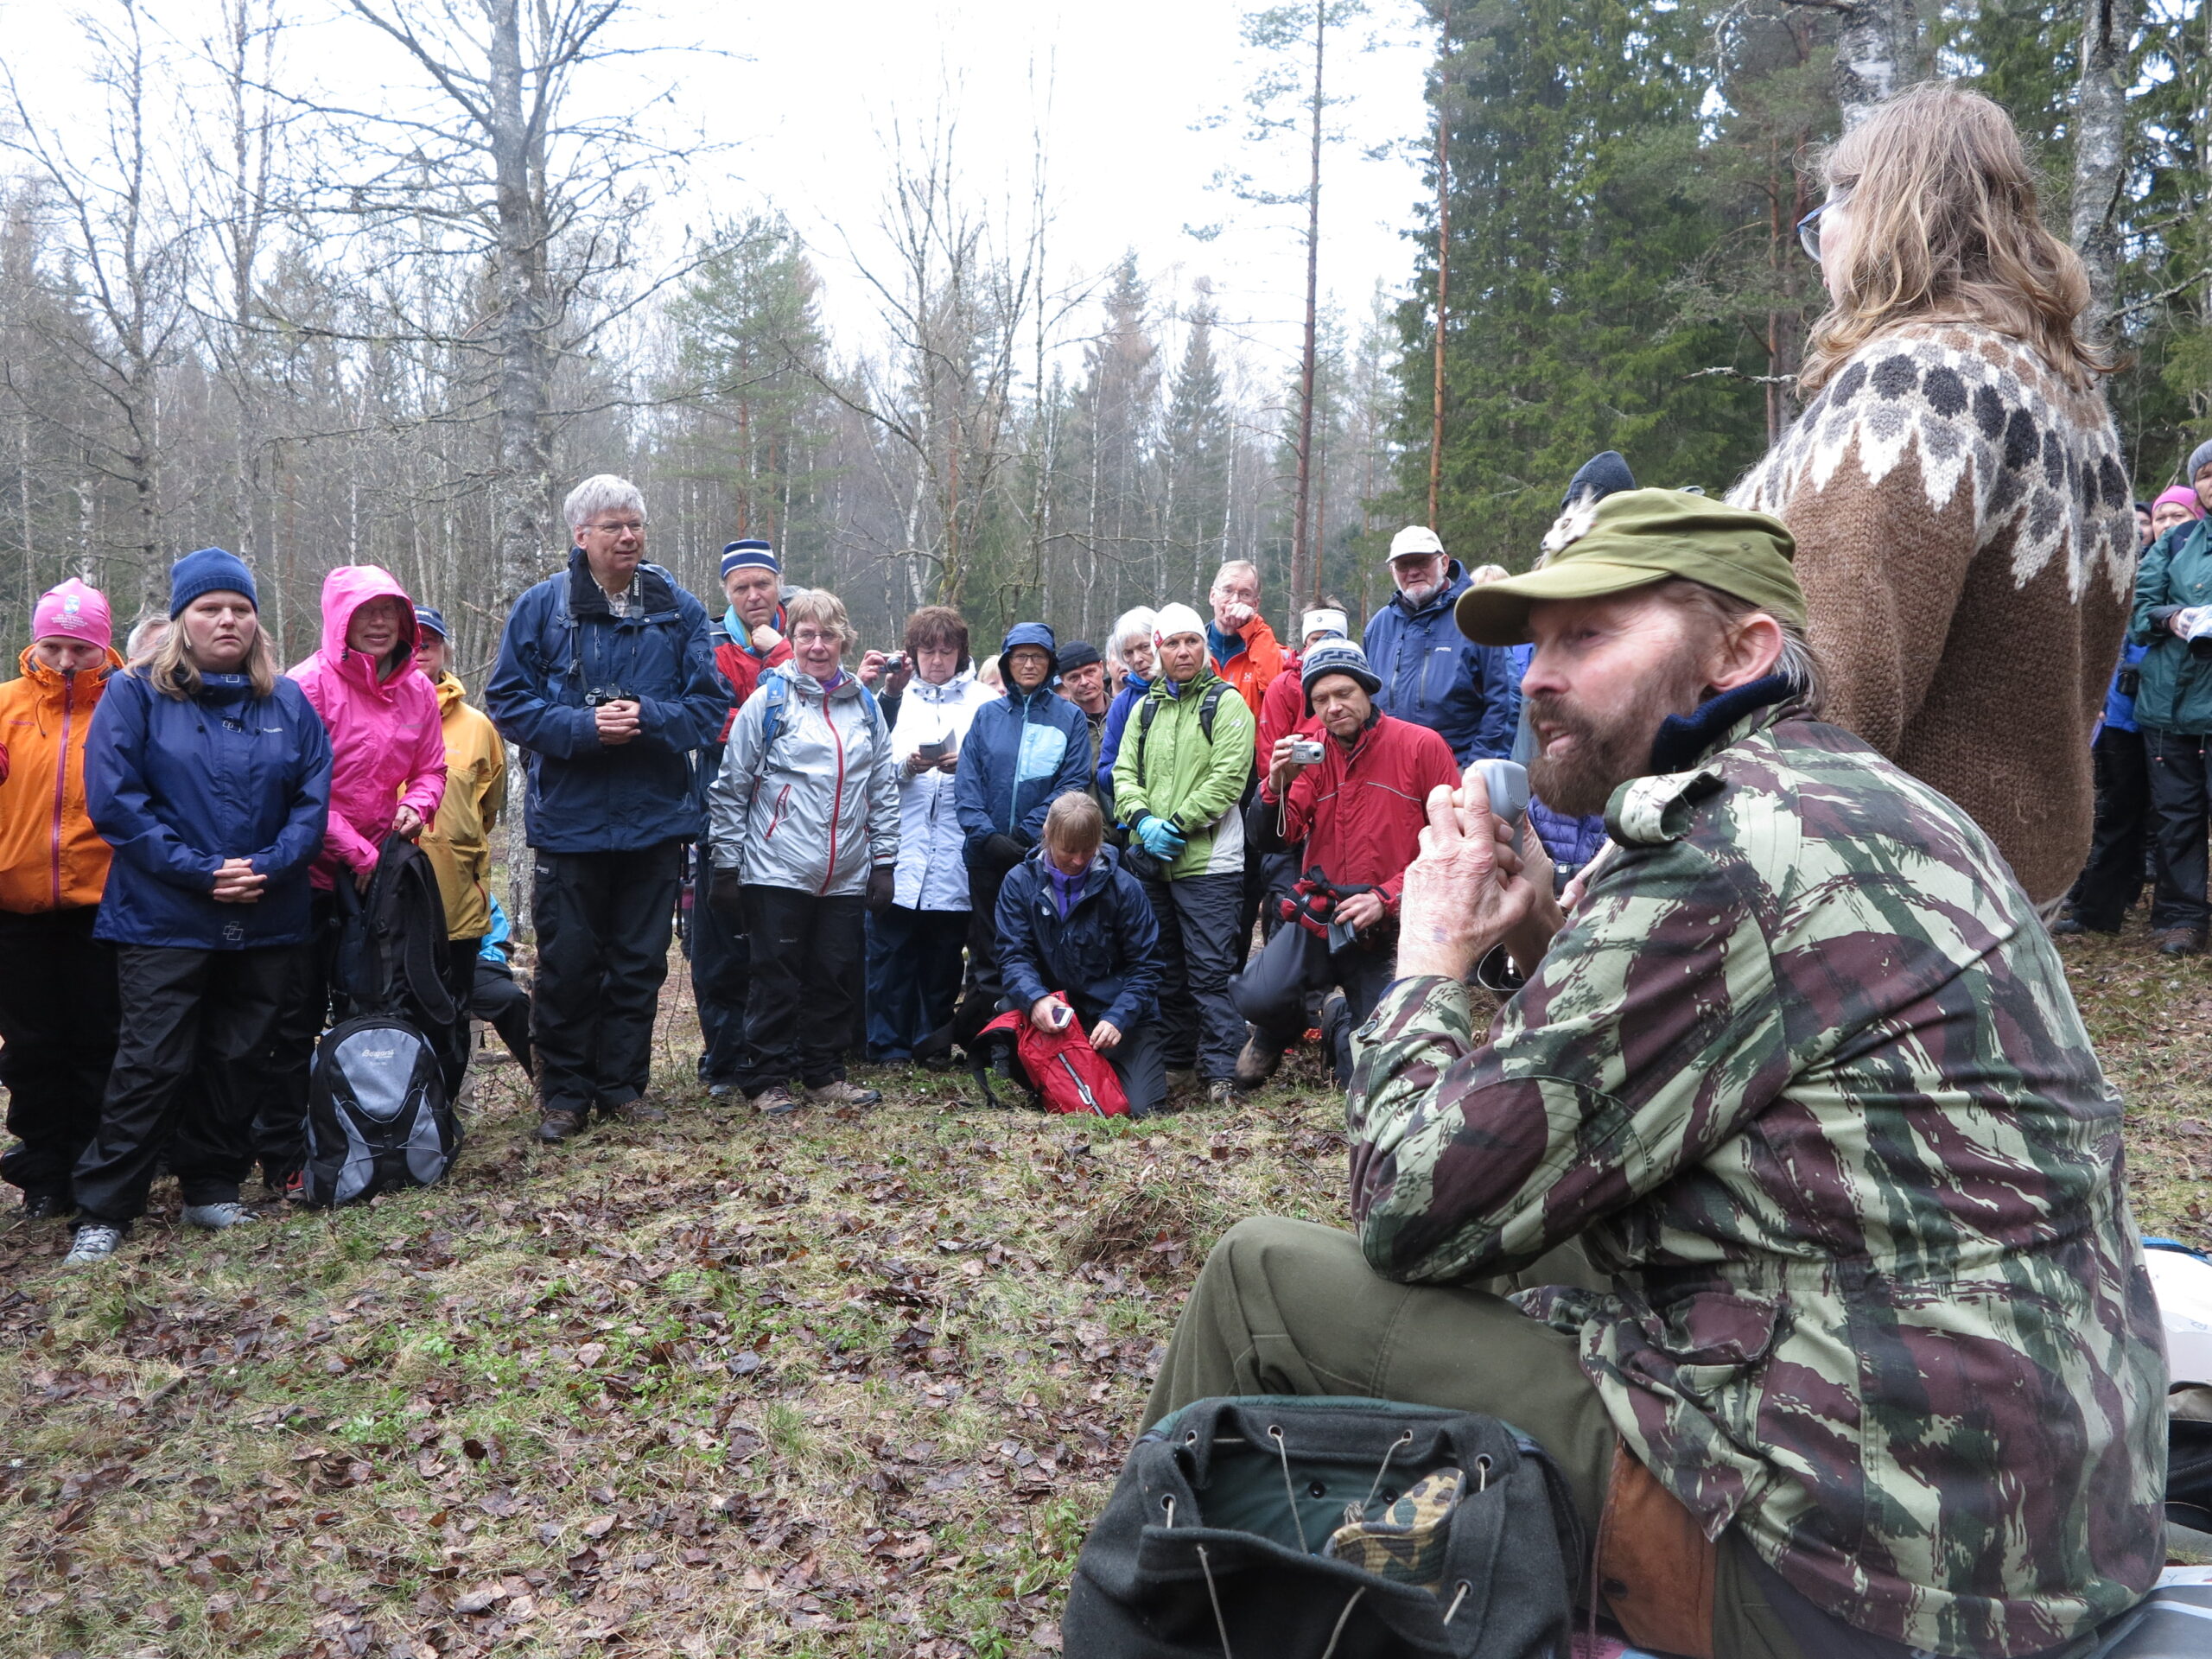 Naturfotografen og forfatteren Sverre M. Fjelstad var en viktig støttespiller for nasjonalparken. I 2015 ledet han en guidet tur til husmannsplassen Dølerud, som senere er blitt DNT-hytte. Foto: Bjarne Røsjø